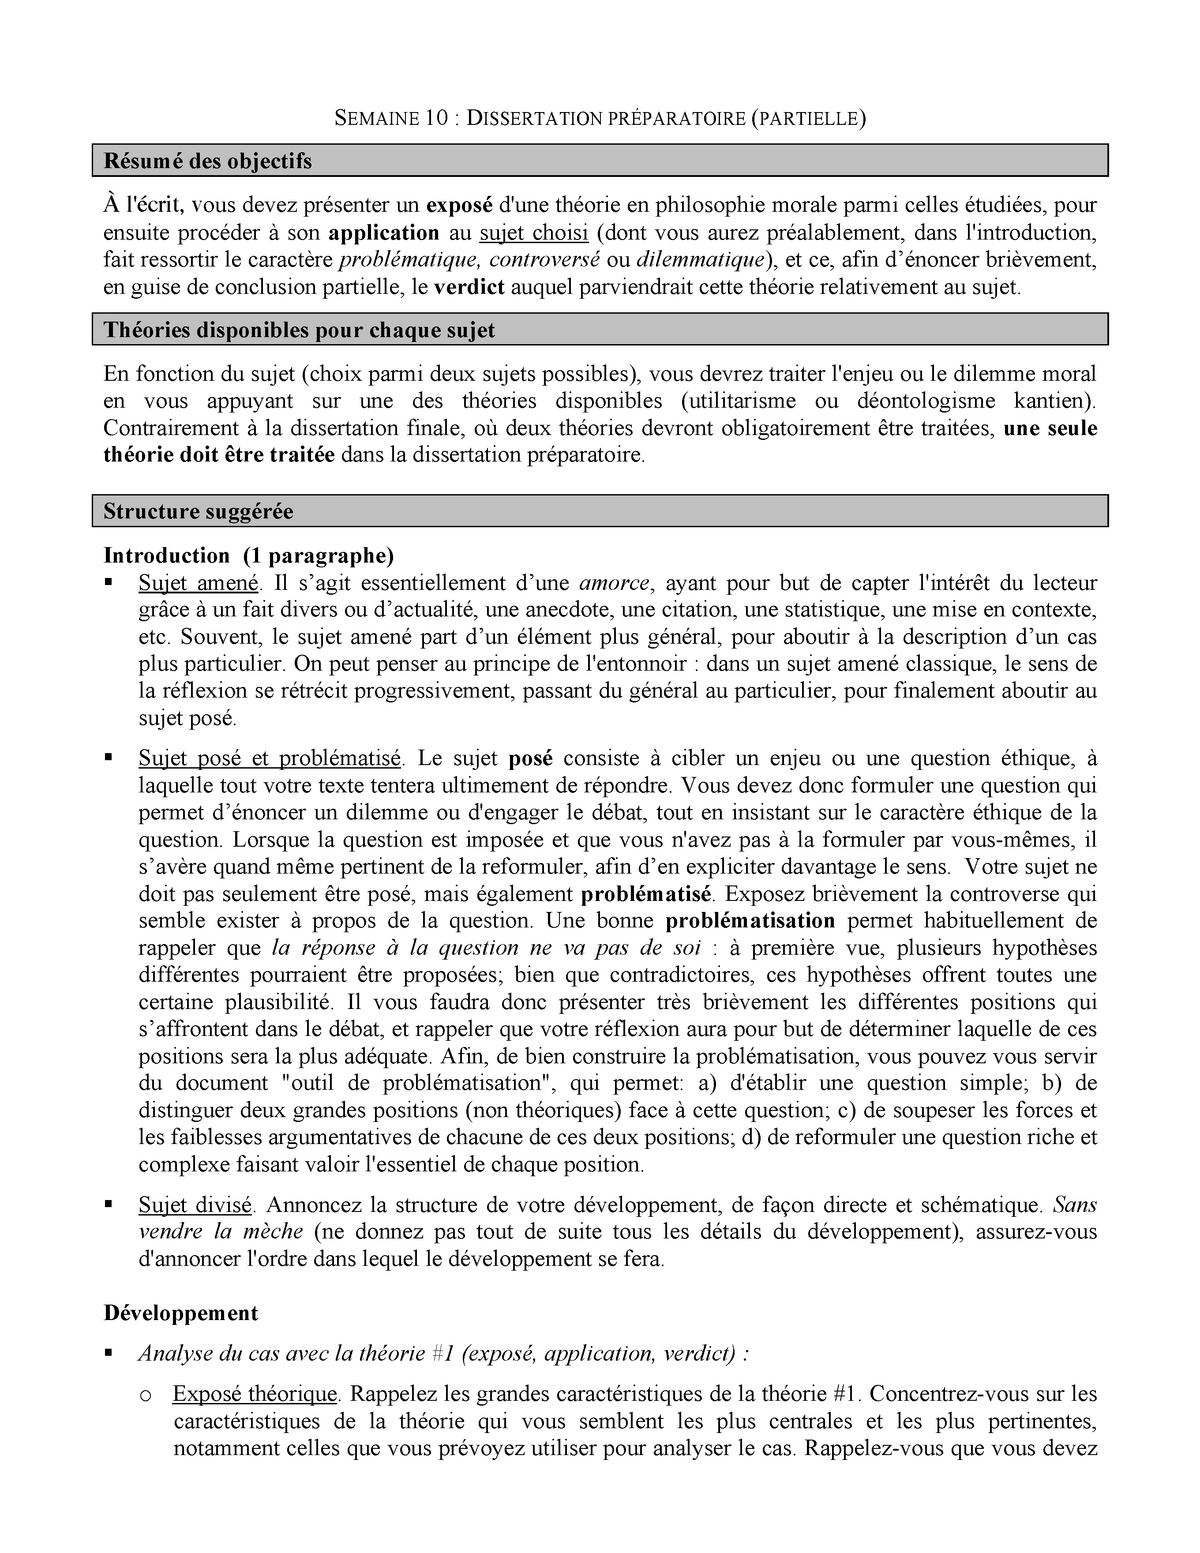 Consignes Dissertation Partielle Semaine 10 Dissertation Preparatoire Partielle Resume Des Studocu